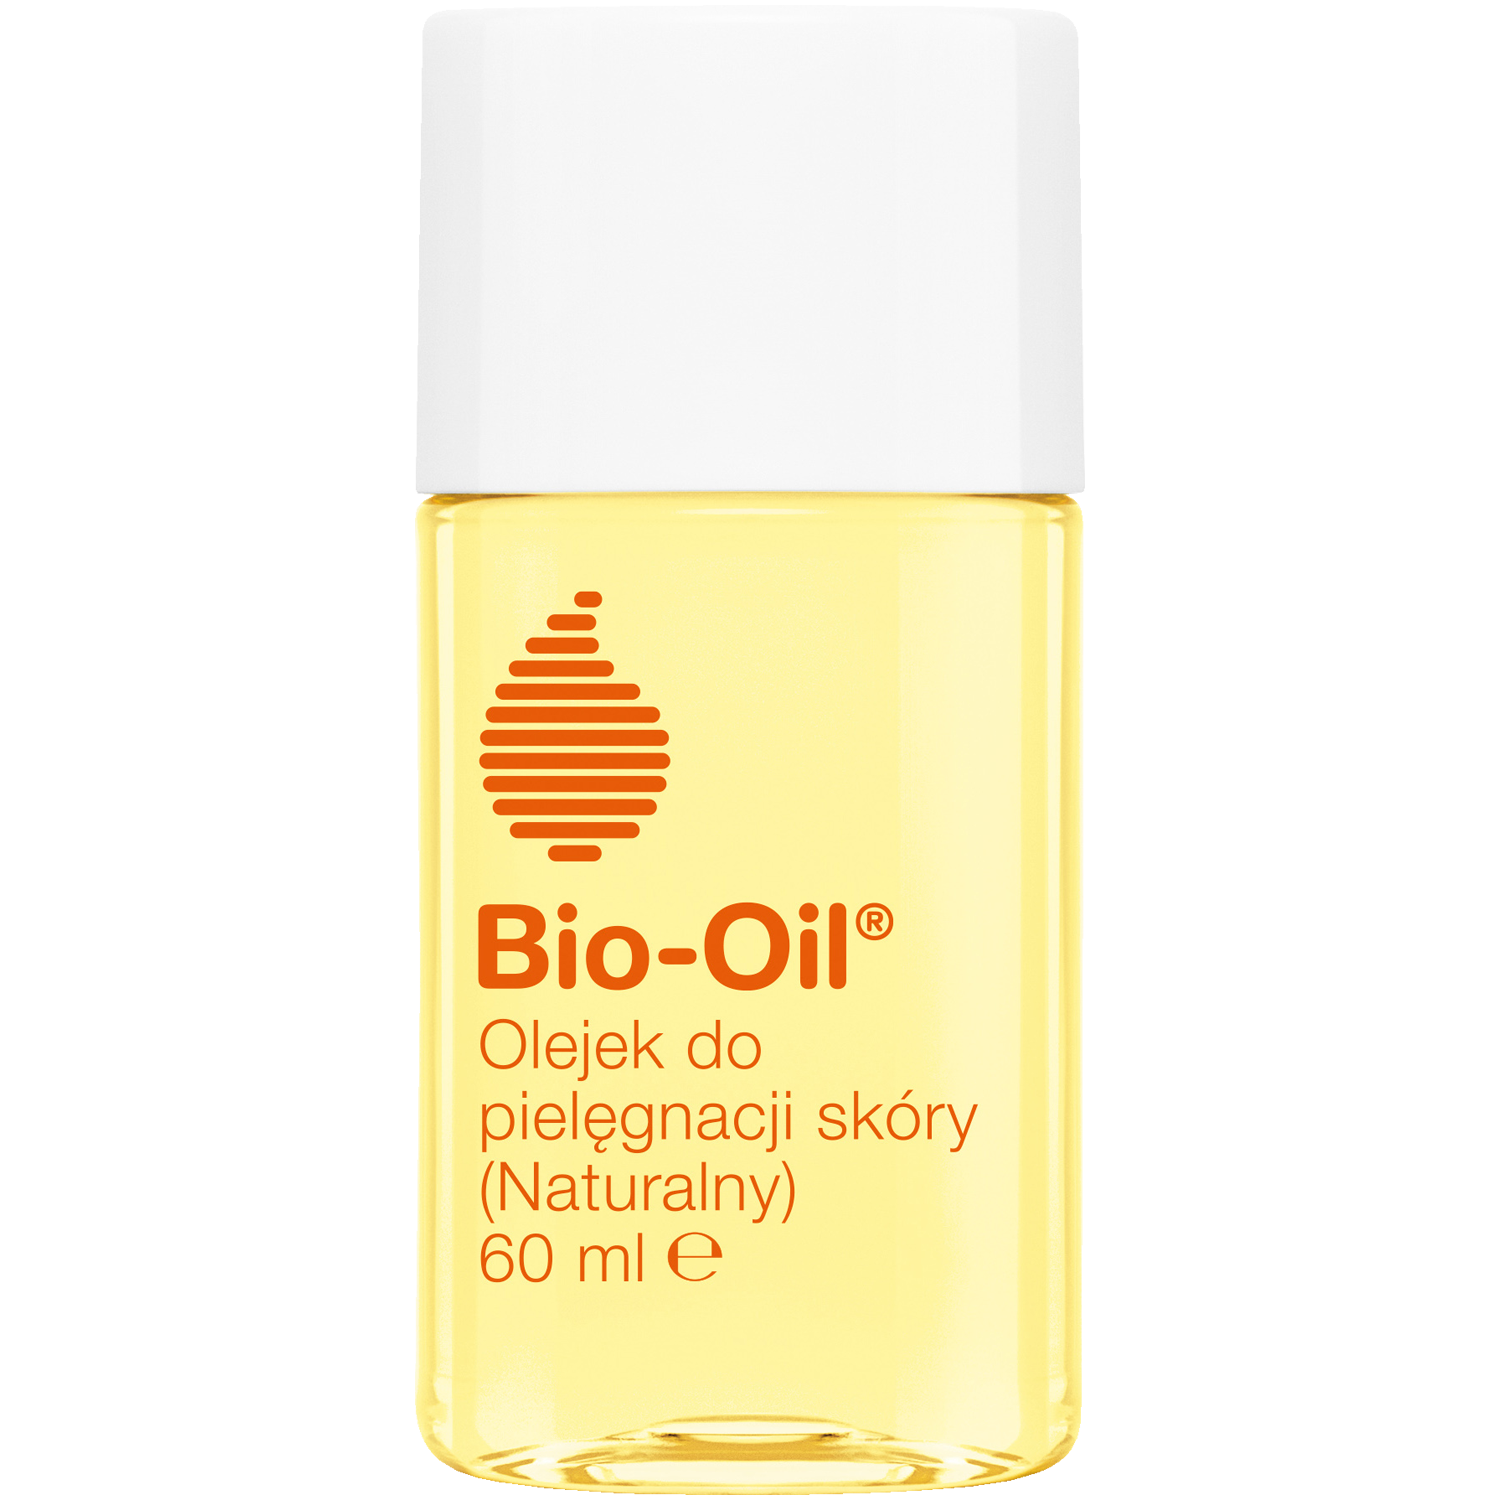 Bio-Oil натуральное масло для тела, 60 мл